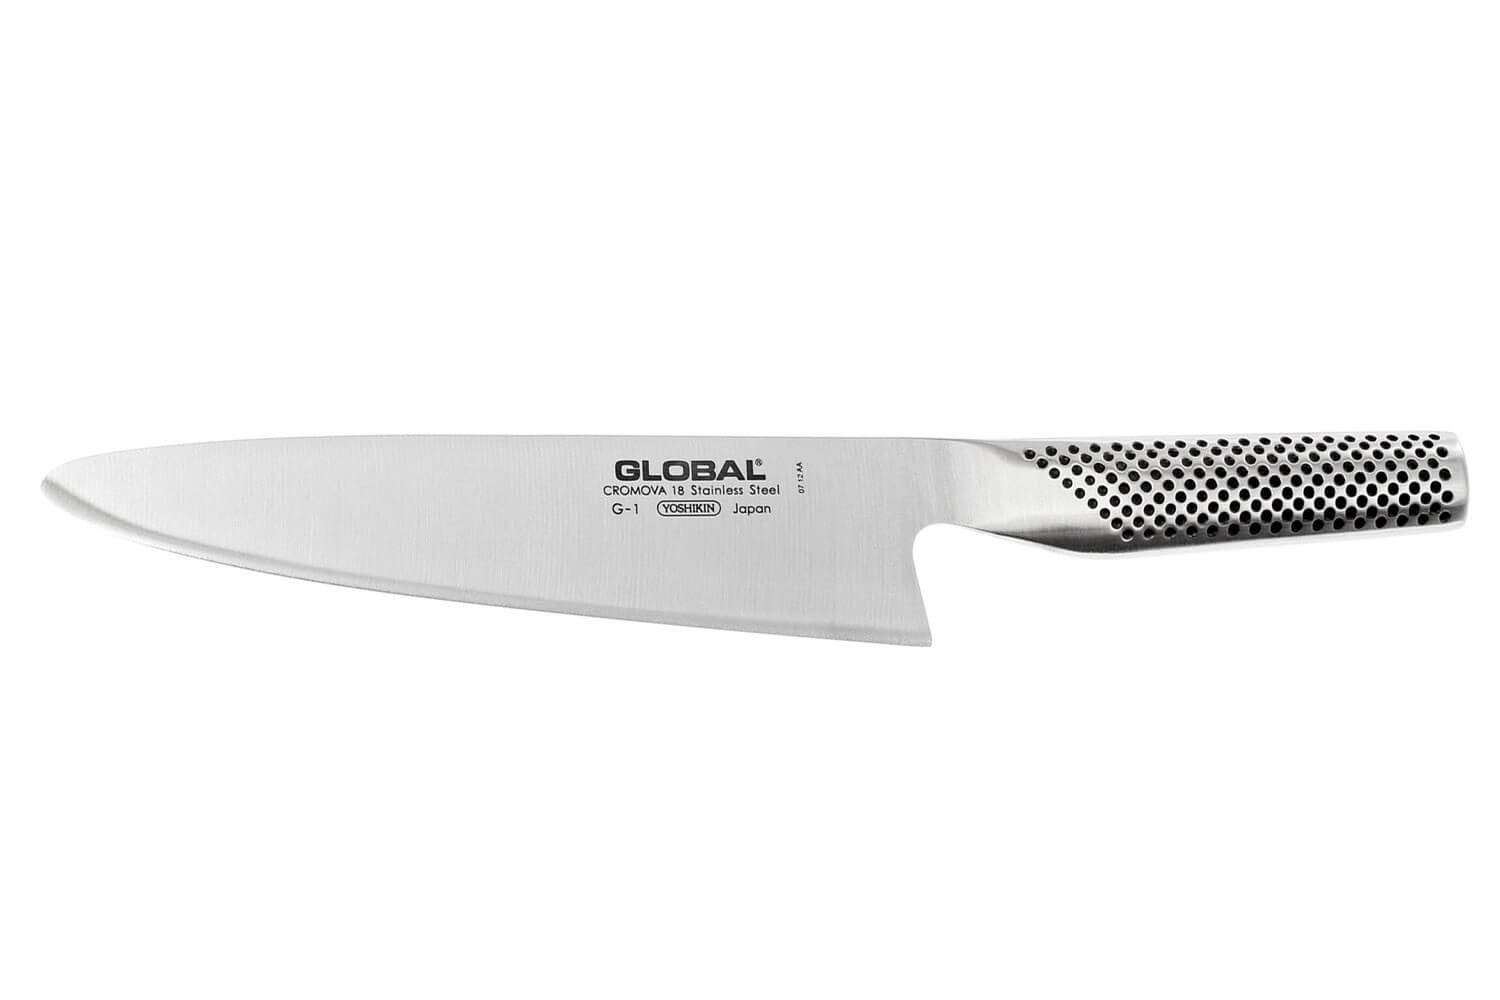 Couteau à viande G3 21 cm - Global